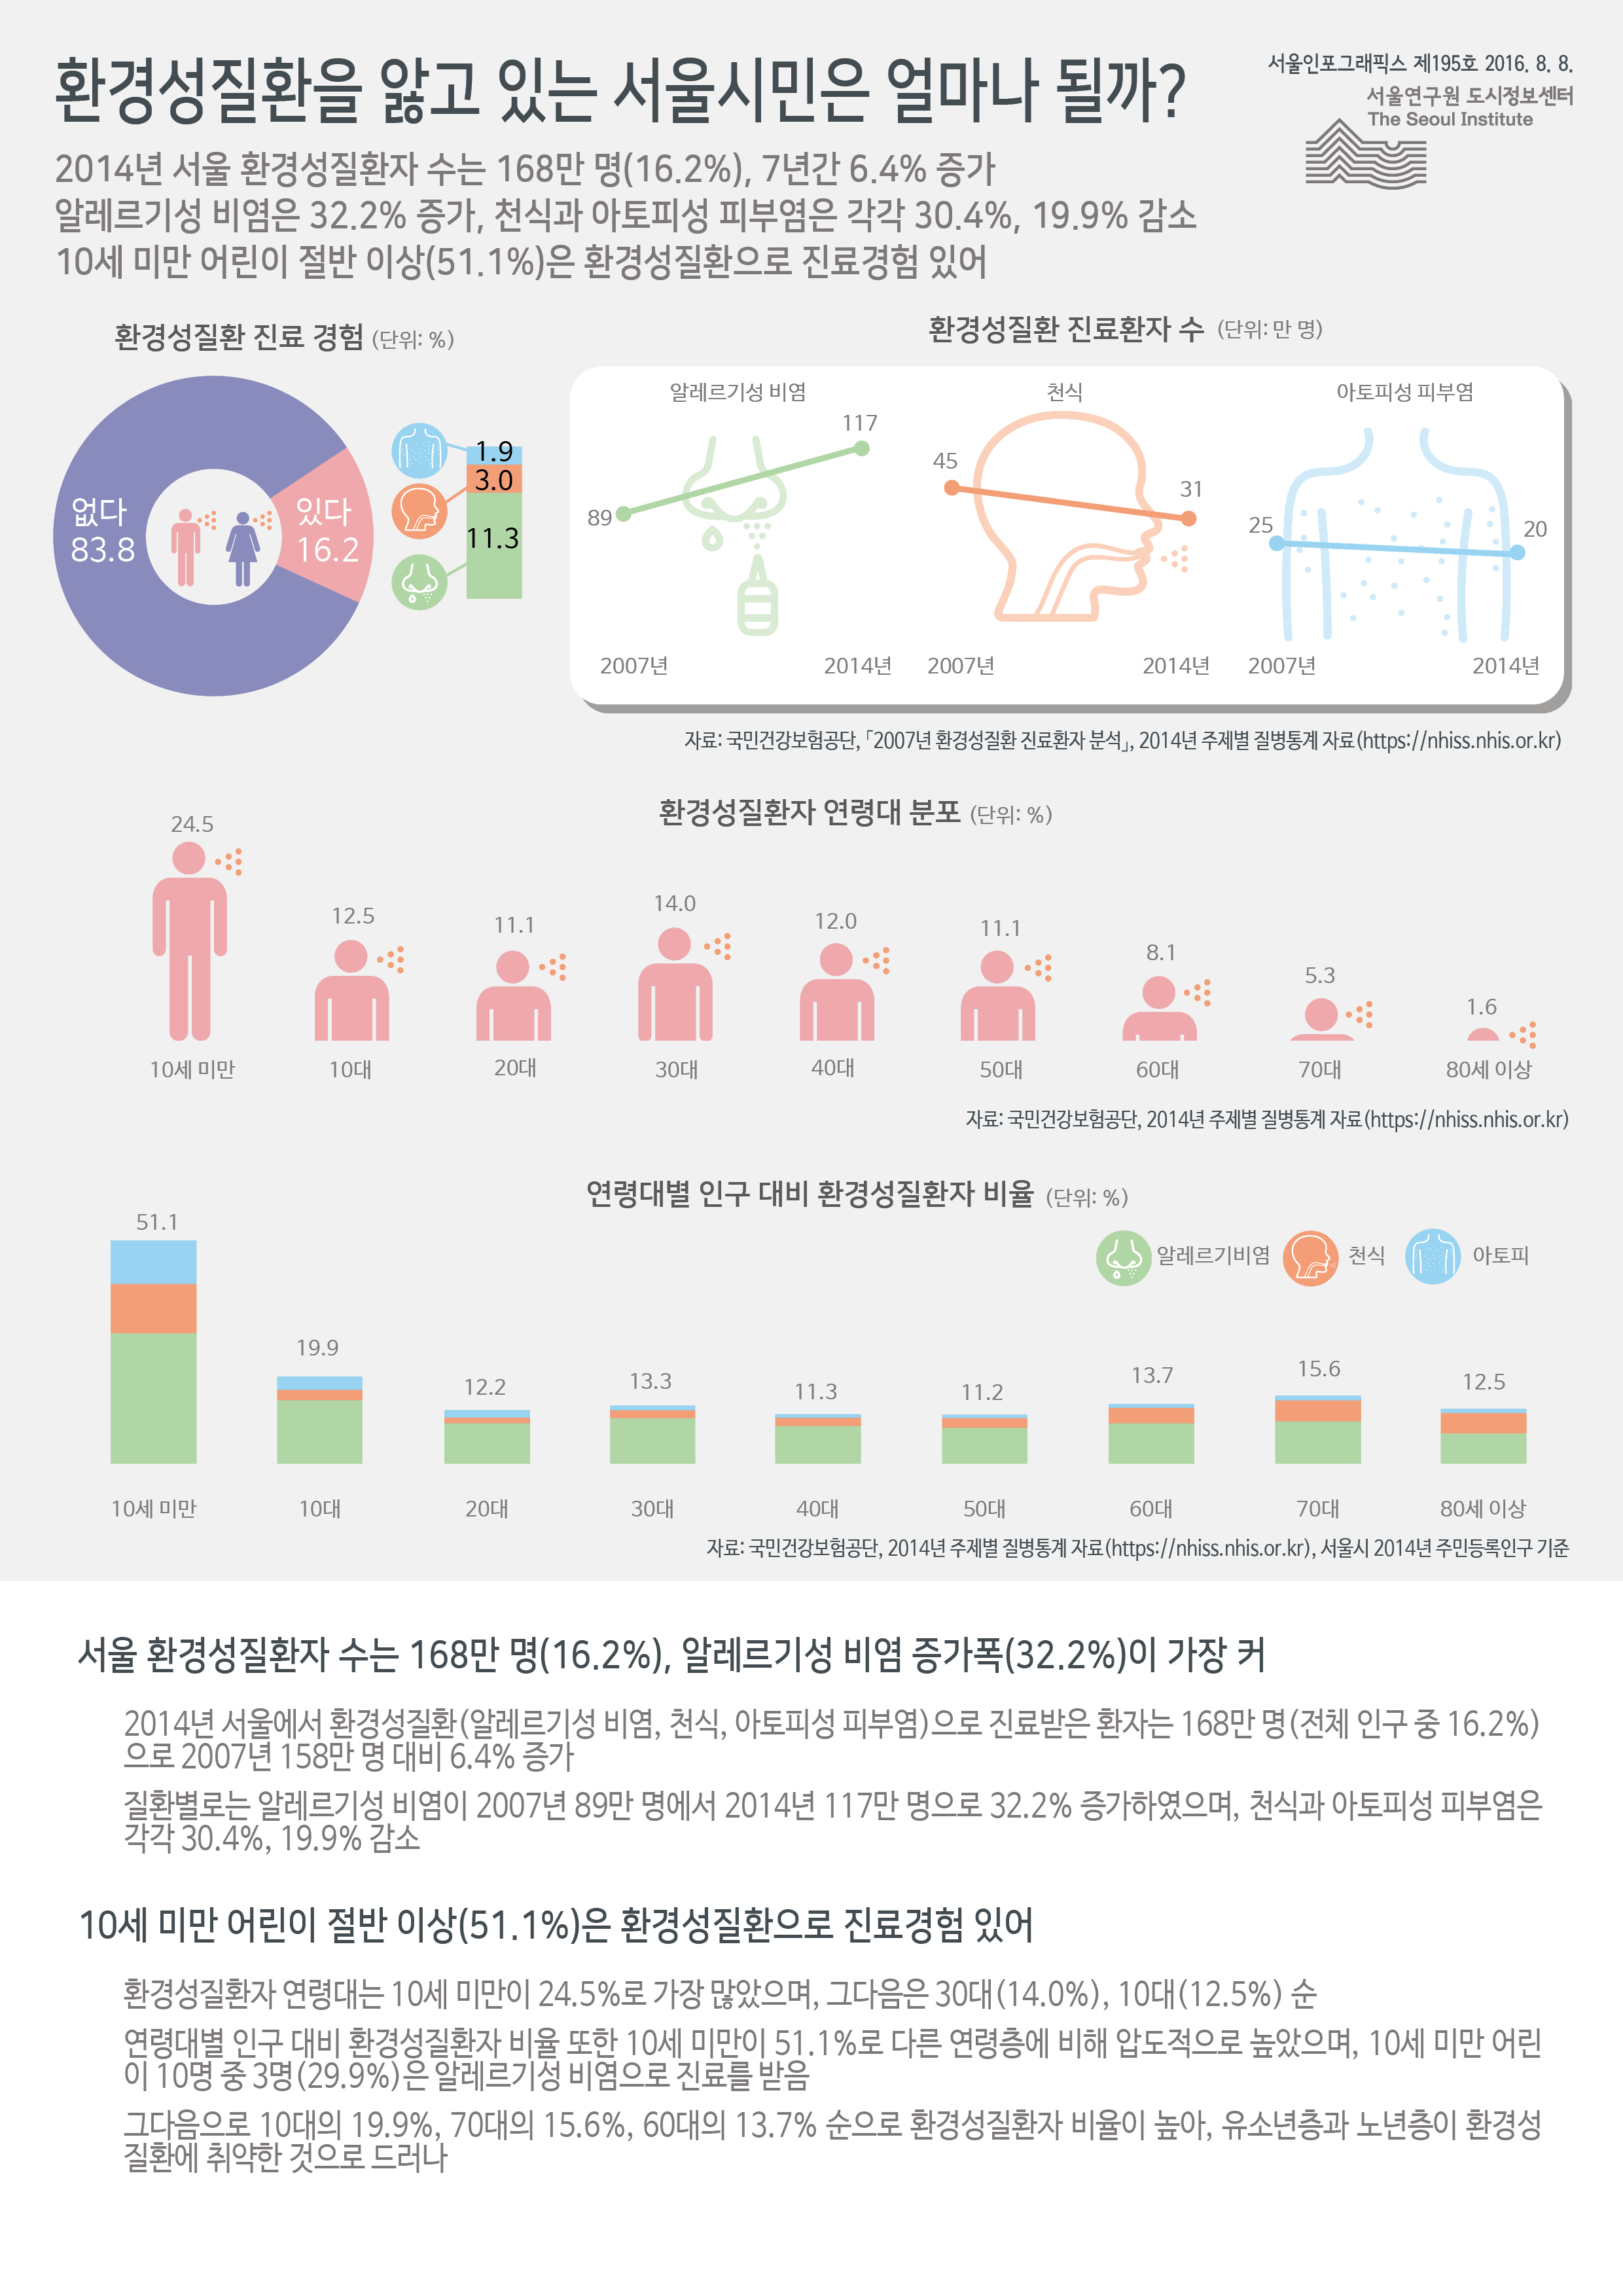 환경성질환을 앓고 있는 서울시민은 얼마나 될까? 서울인포그래픽스 제195호 2016년 8월 8일 2014년 서울 환경성질환자 수는 168만 명(16.2%), 7년간 6.4% 증가함. 알레르기성 비염은 32.2% 증가, 천식과 아토피성 피부염은 각각 30.4%, 19.9% 감소함. 10세 미만 어린이 절반 이상(51.1%)은 환경성질환으로 진료경험 있음으로 정리 될 수 있습니다. 인포그래픽으로 제공되는 그래픽은 하단에 표로 자세히 제공됩니다.